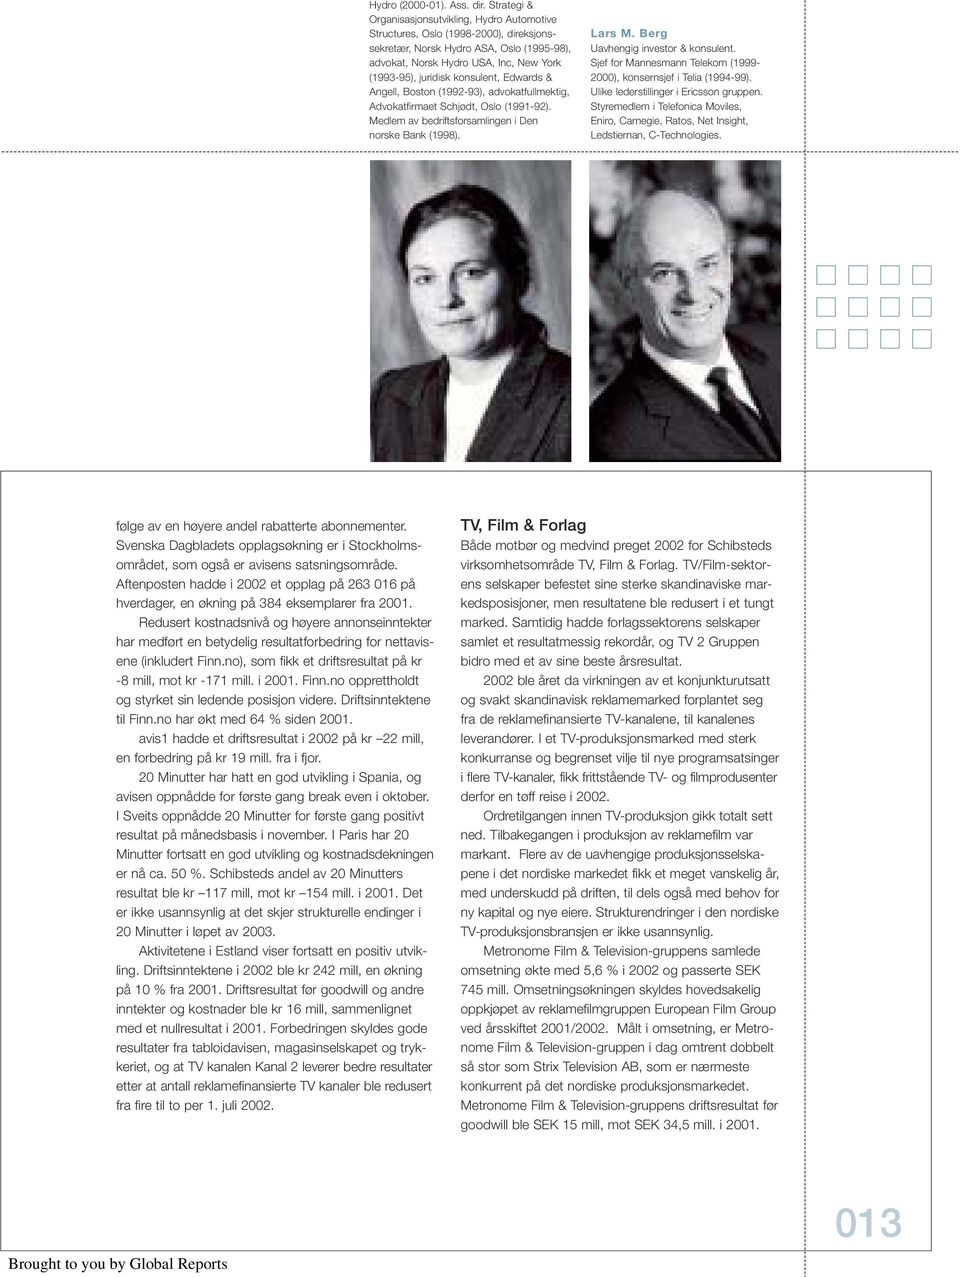 konsulent, Edwards & Angell, Boston (1992-93), advokatfullmektig, Advokatfirmaet Schjødt, Oslo (1991-92). Medlem av bedriftsforsamlingen i Den norske Bank (1998). Lars M.